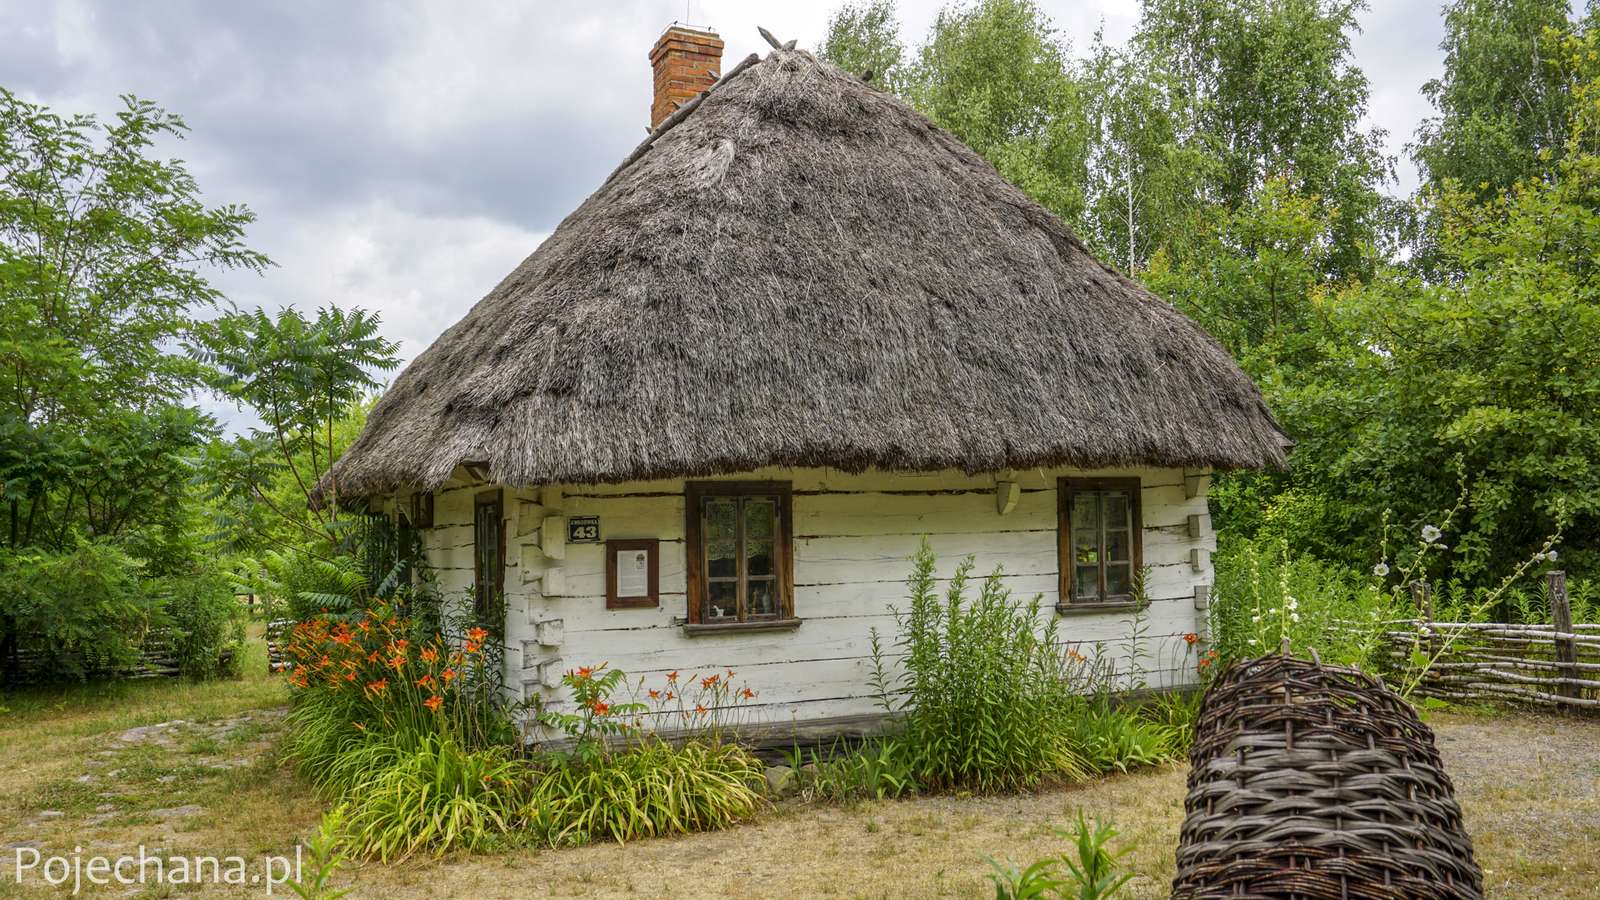 Een hut in Podlasie. legpuzzel online